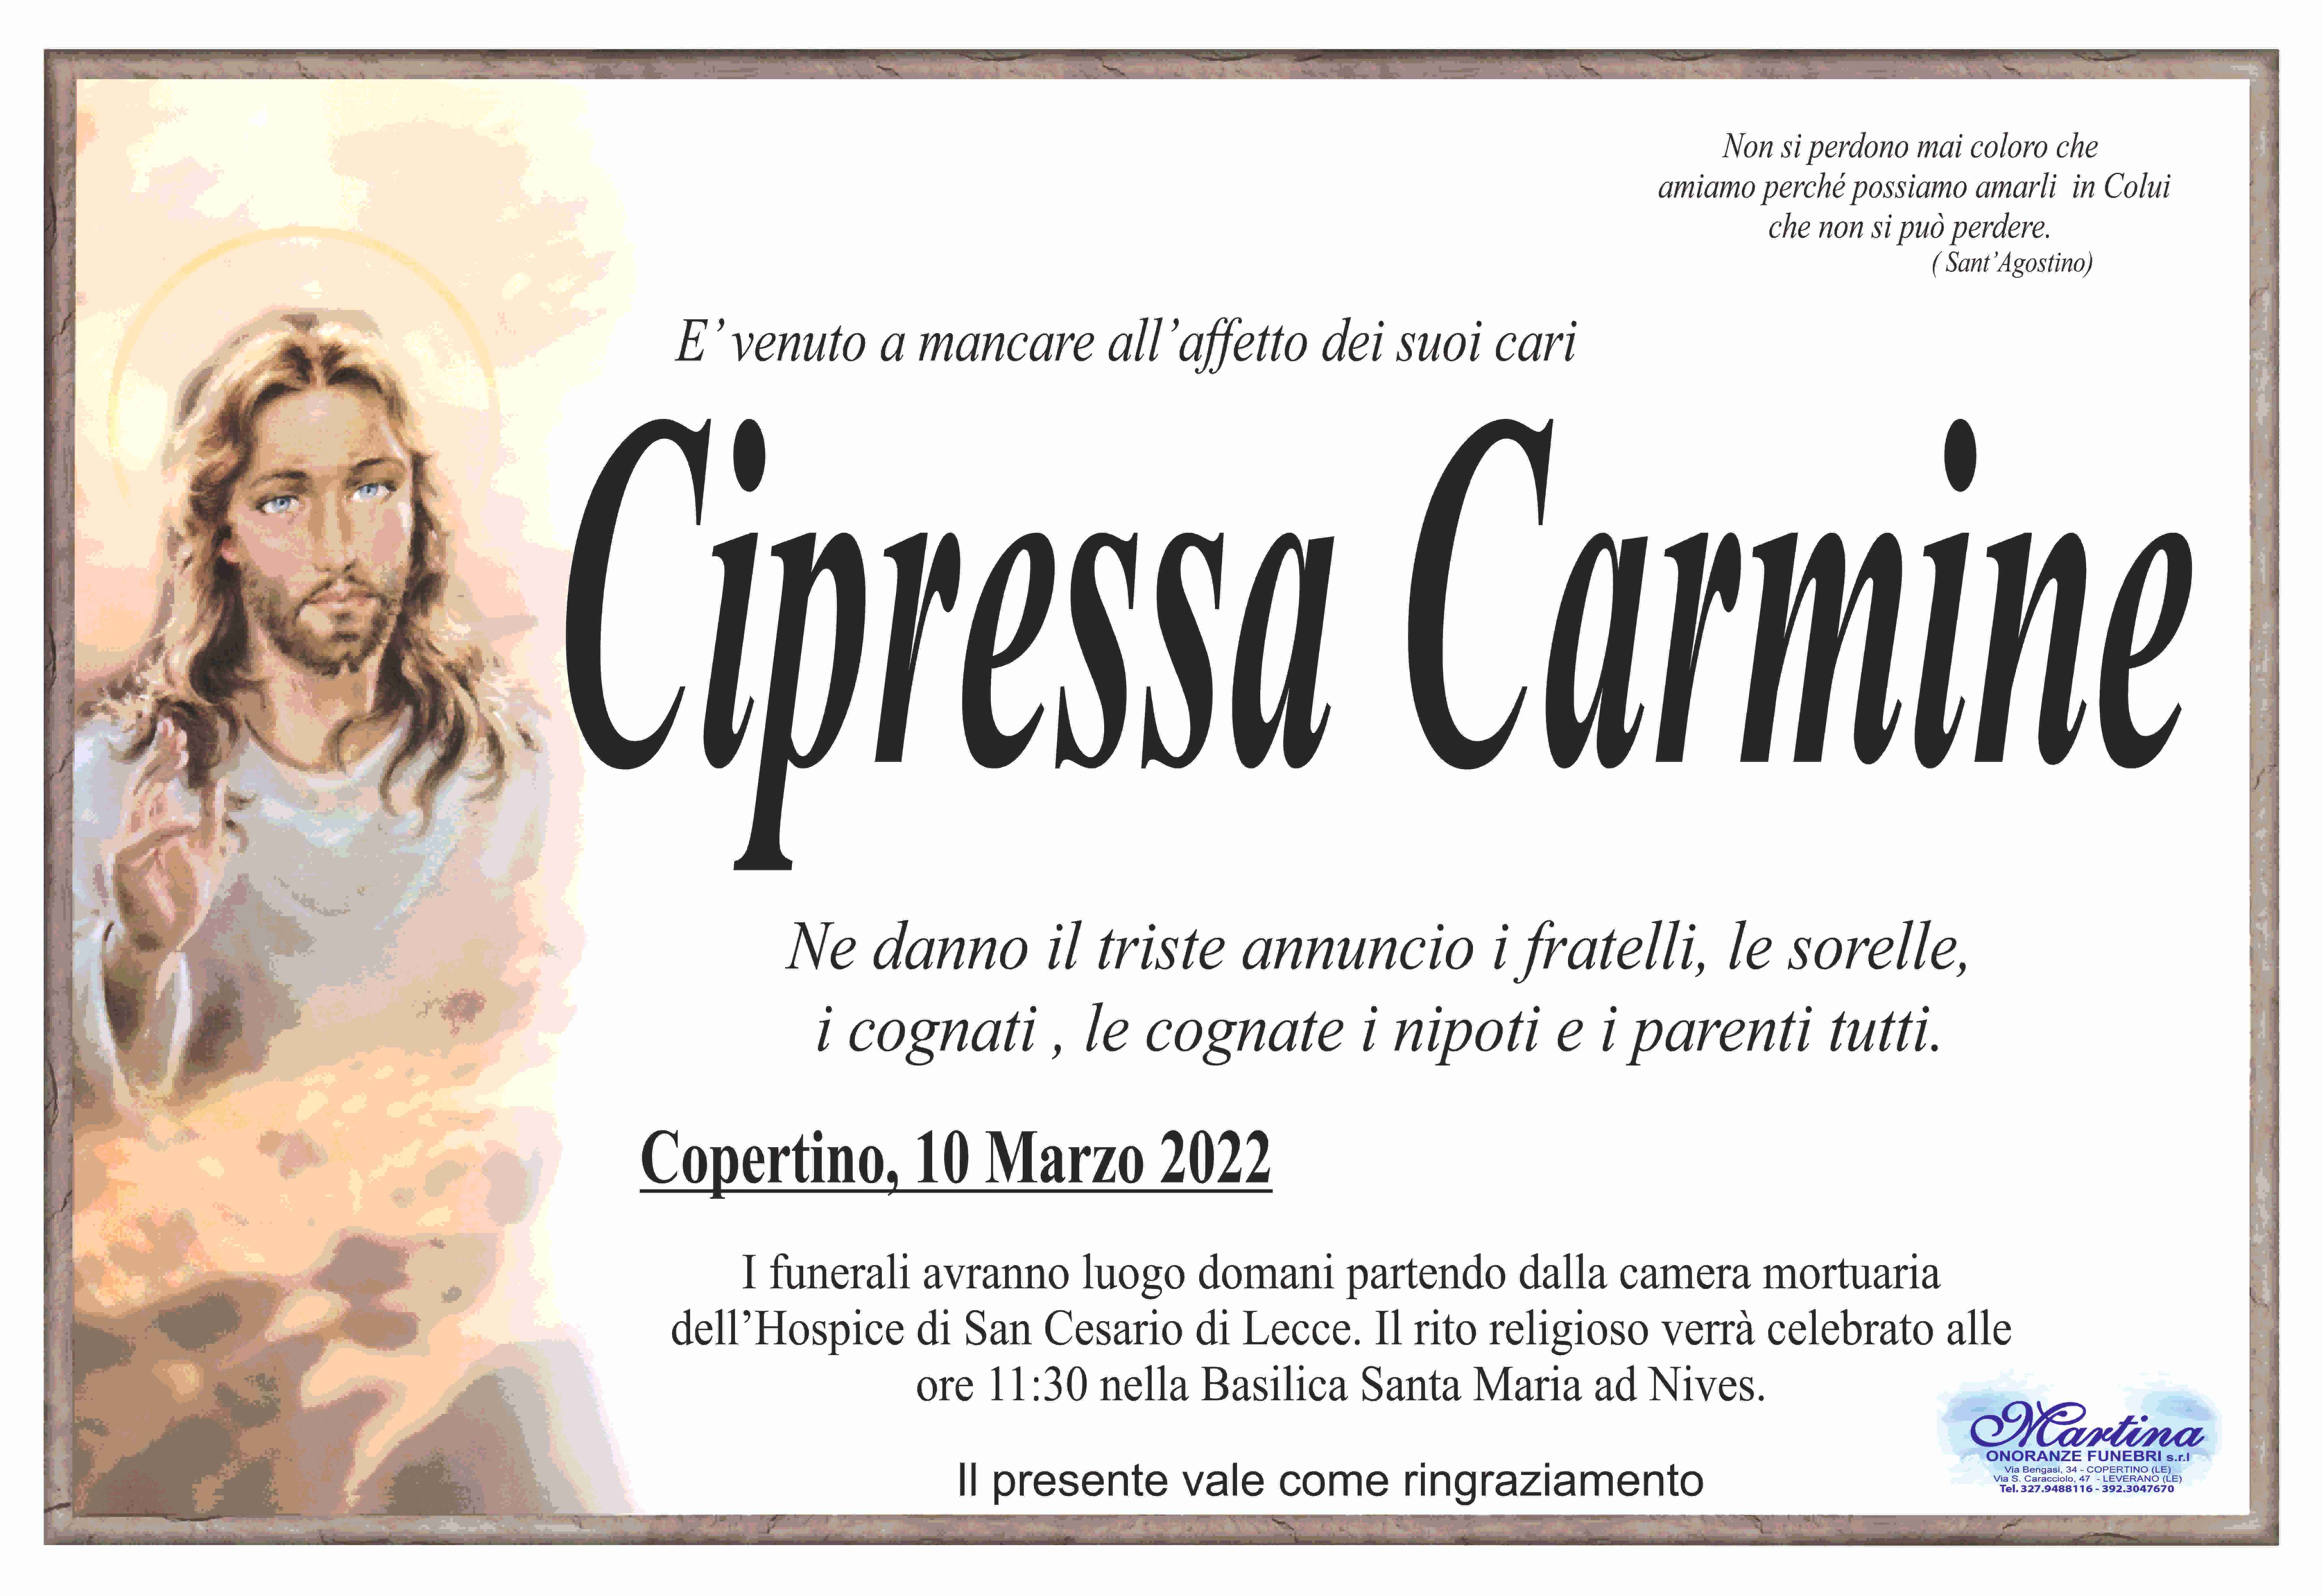 Carmine Cipressa